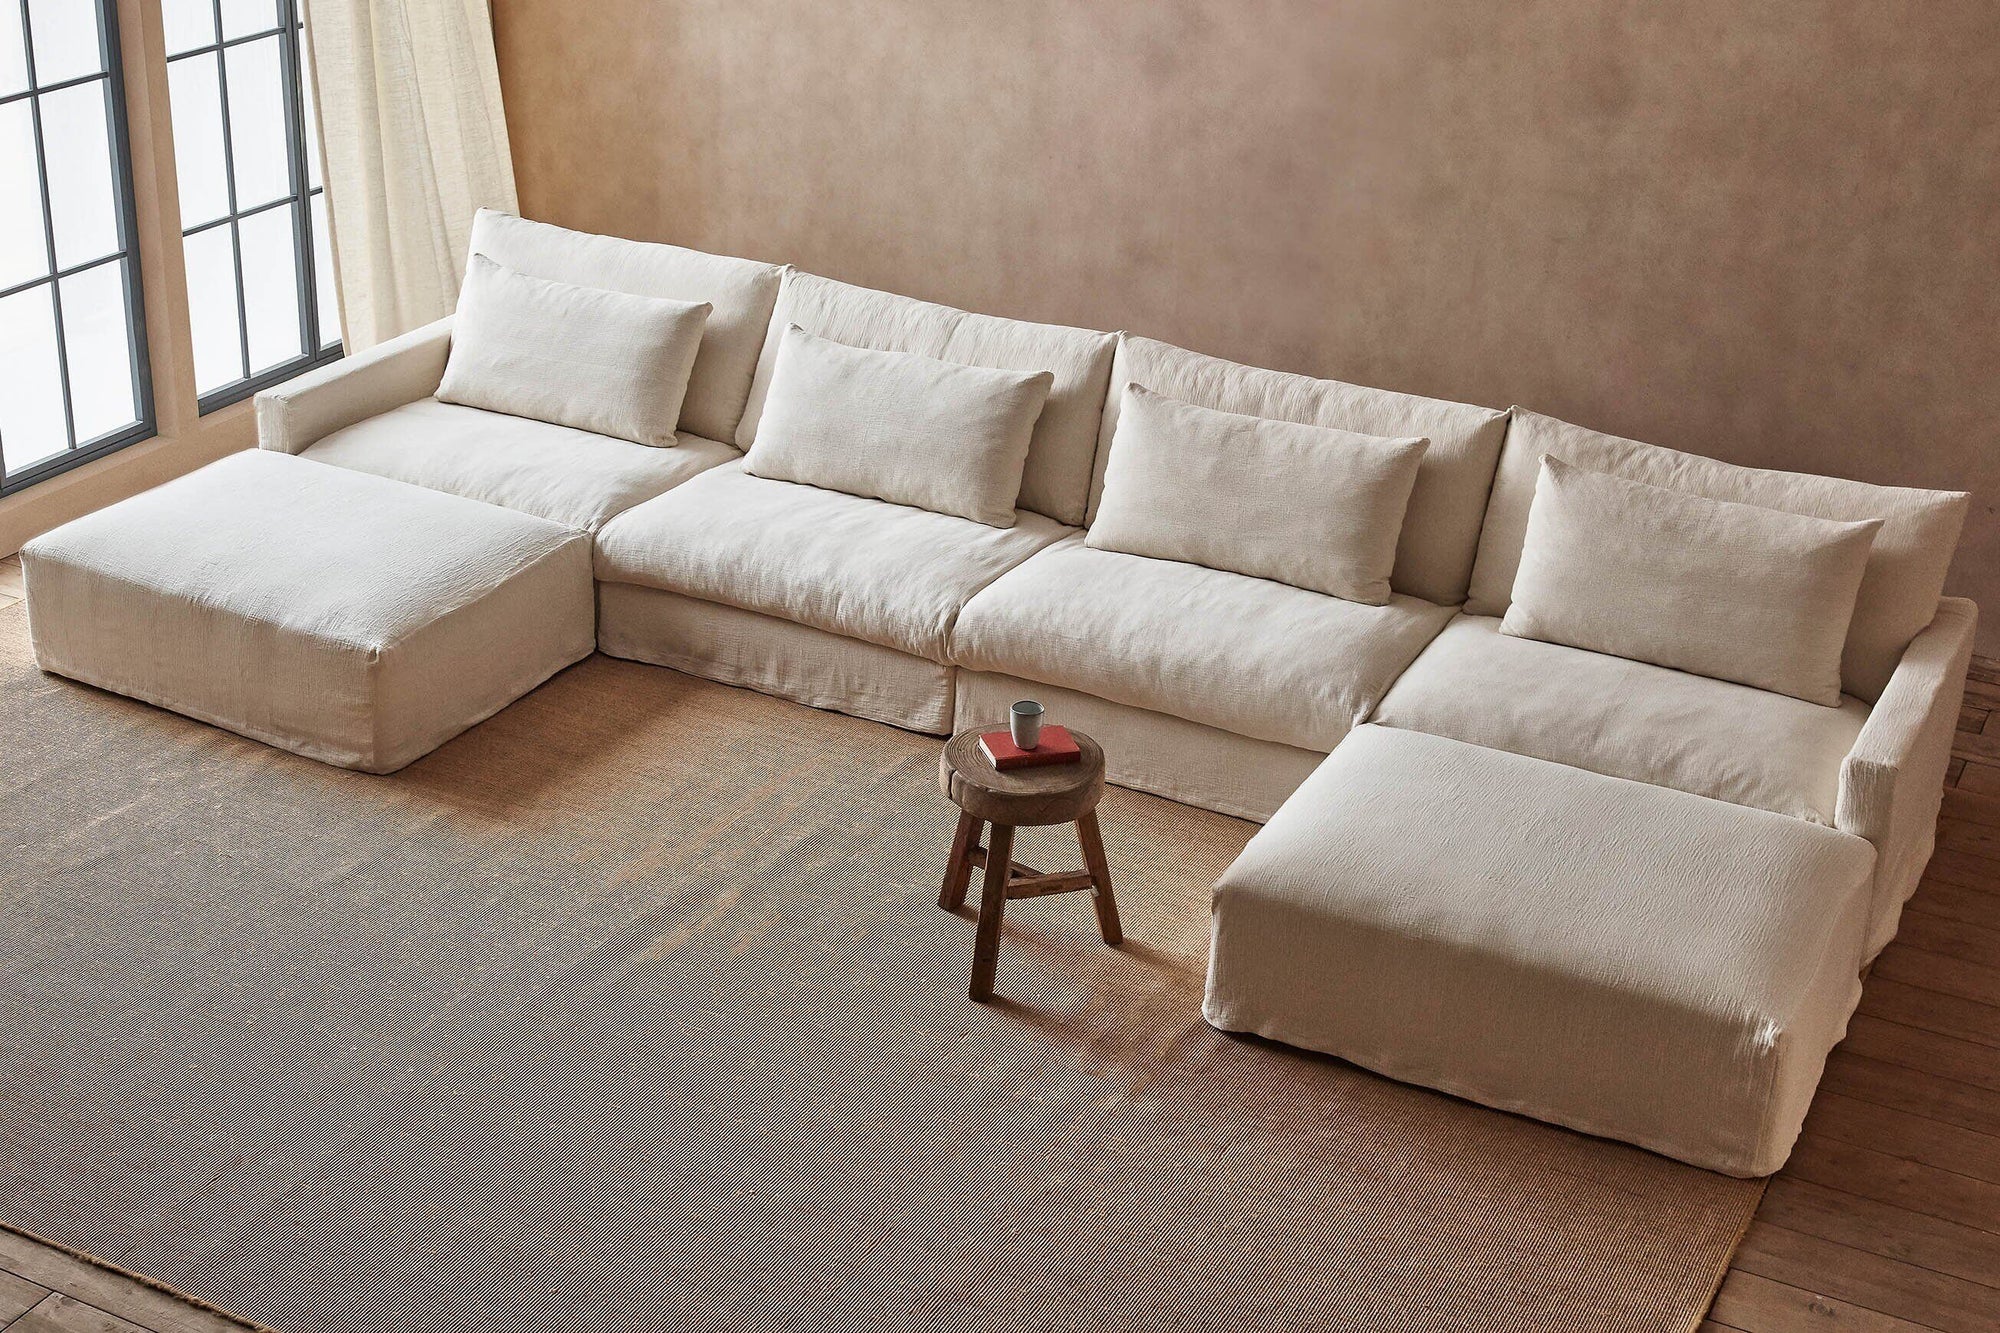 Devyn U-Shape Sectional Sofa in Corn Silk, a light beige Washed Cotton Linen